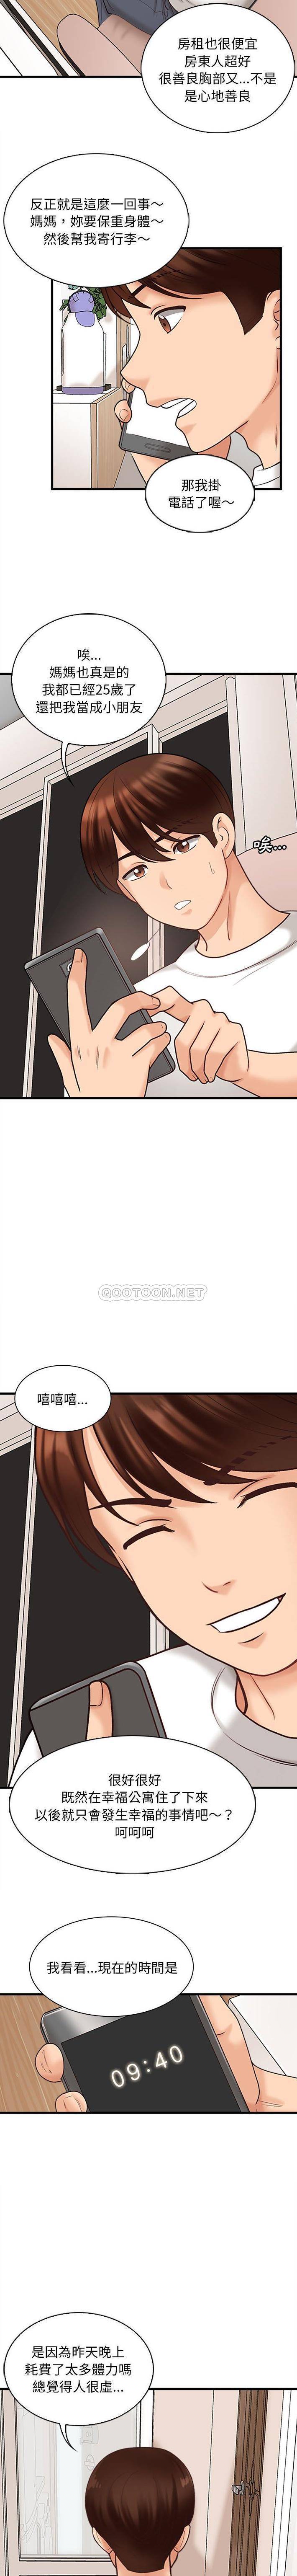 韩国污漫画 幸福公寓 第7话 13